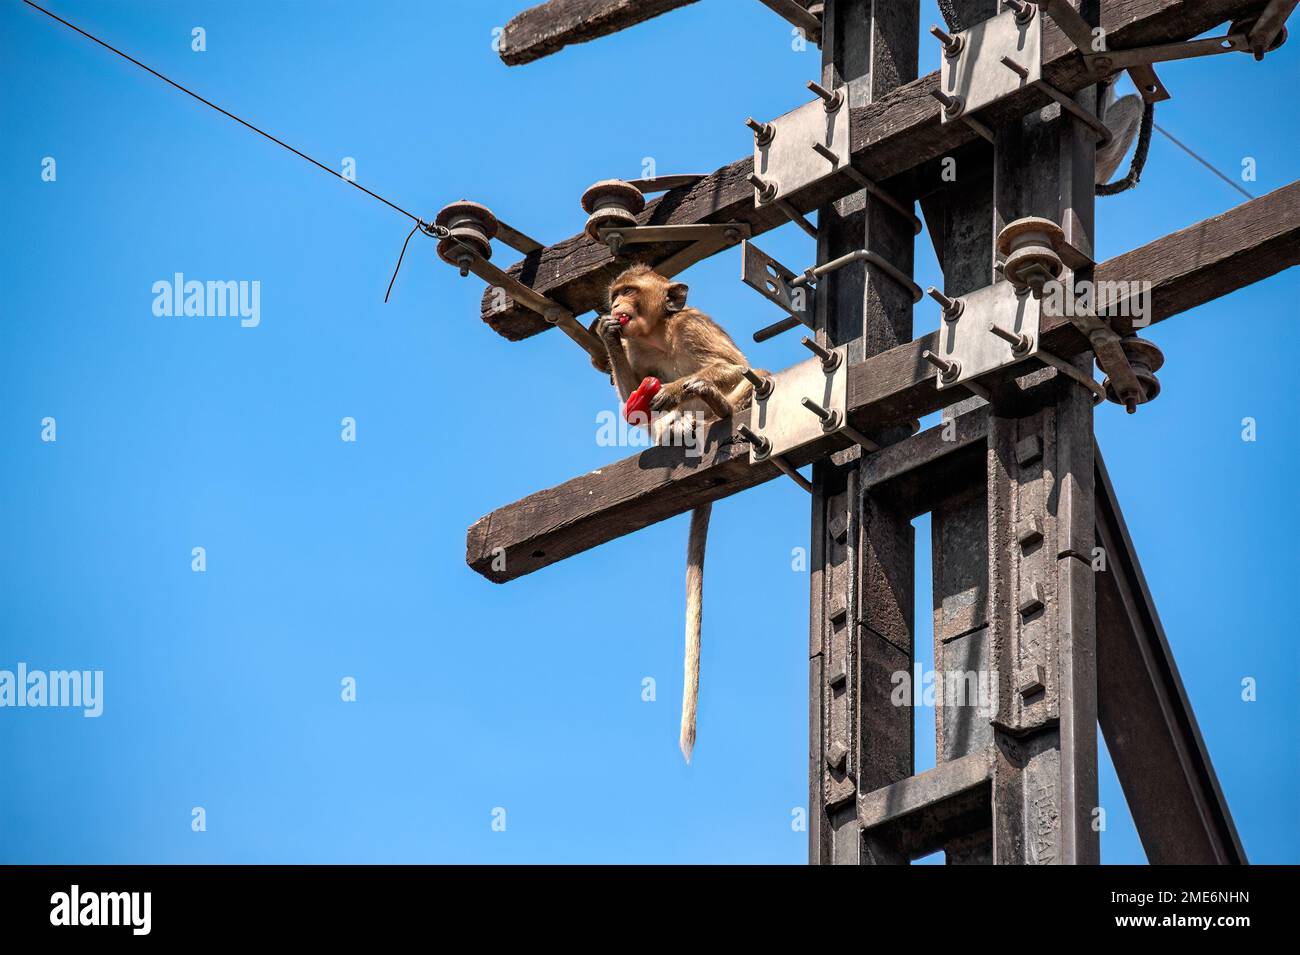 Una scimmia a coda lunga siede su un palo elettrico abbandonato, guardando fuori mentre mangia una mela rosa. Foto Stock